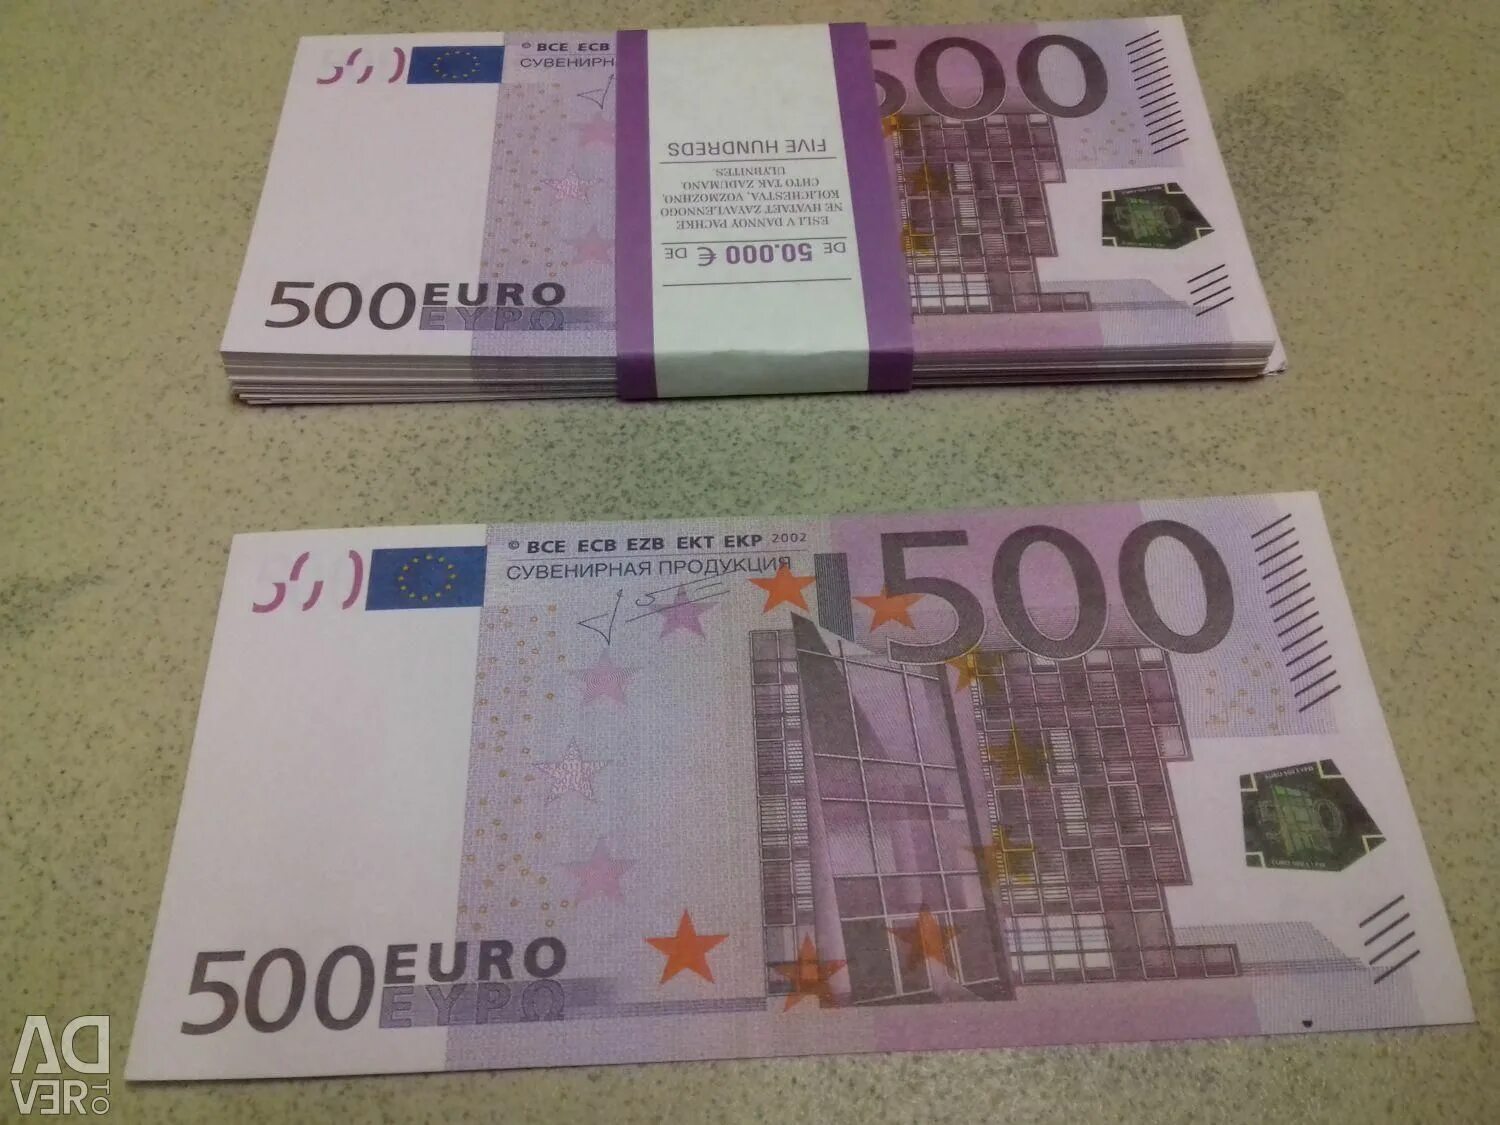 600 евро сколько в рублях. Пачка купюр 500 евро. 500 Евро банка приколов. 500 Евро в рублях. 500 Евро купюра сувенирная продукция.